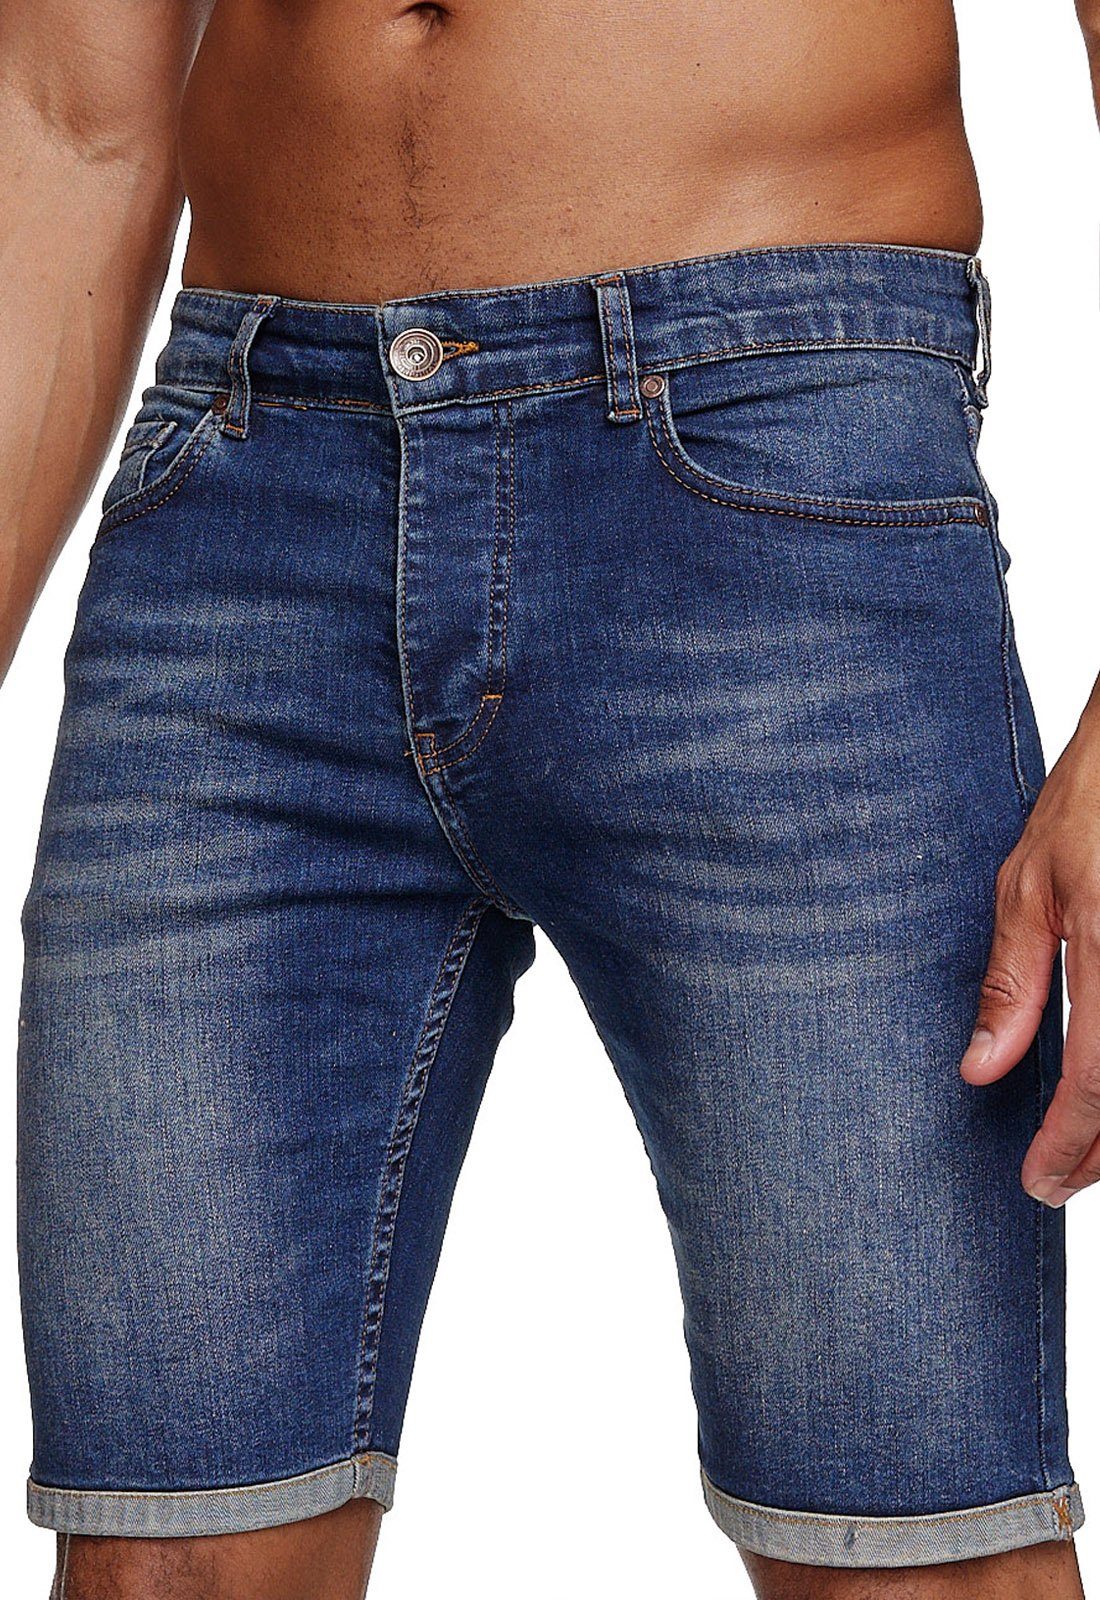 Reslad Jeansshorts Reslad Jeans Shorts Herren Kurze Hosen Sommer l Used Look Washed Männe Denim Jeansbermudas Stretch Jeans-Hose dunkelblau